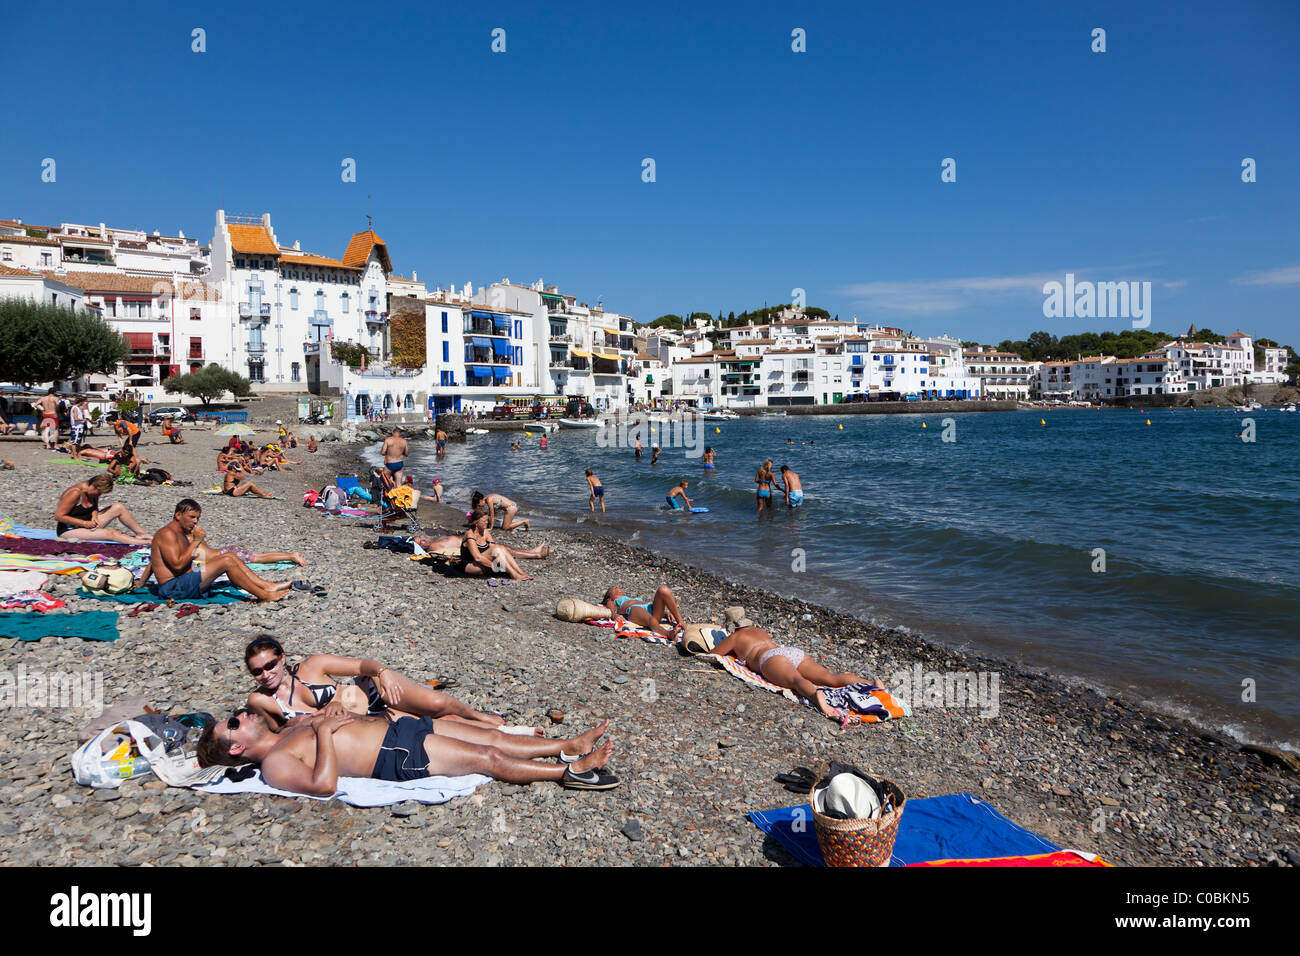 Les gens en train de bronzer sur une plage de Cadaqués Emporda Catalogne Espagne Banque D'Images